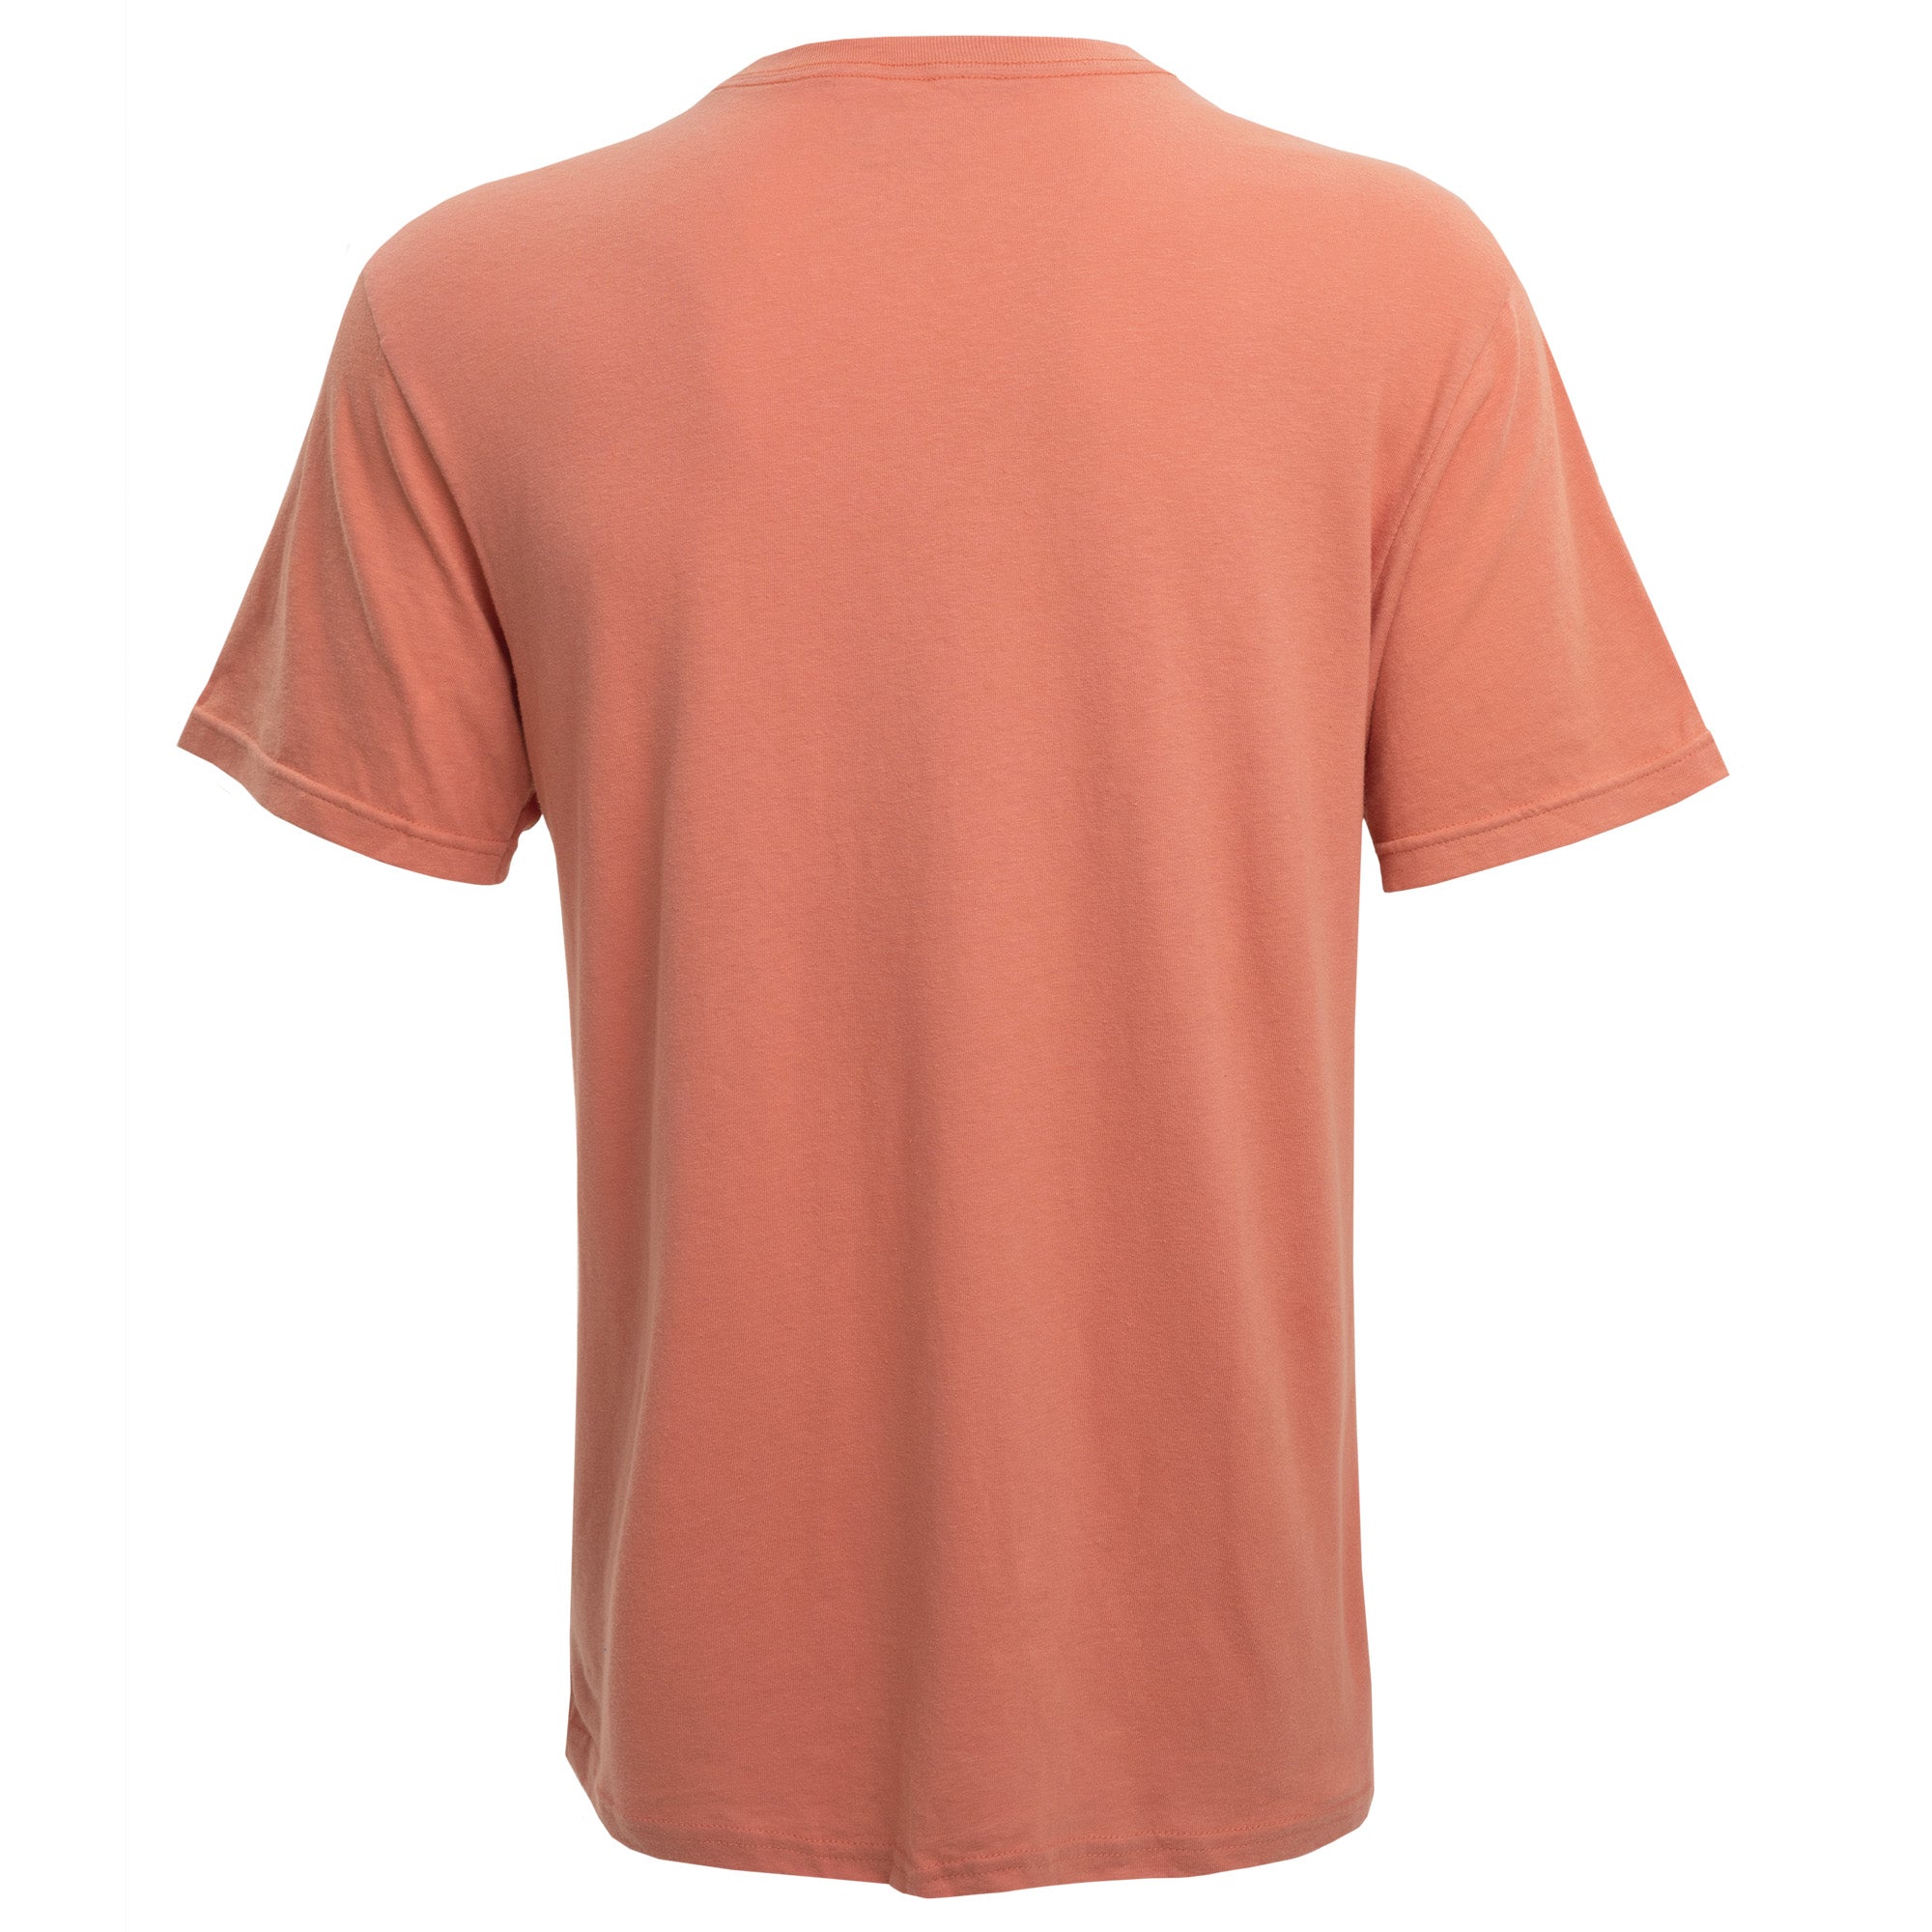 OG100 - Organic Short Sleeve T-Shirt